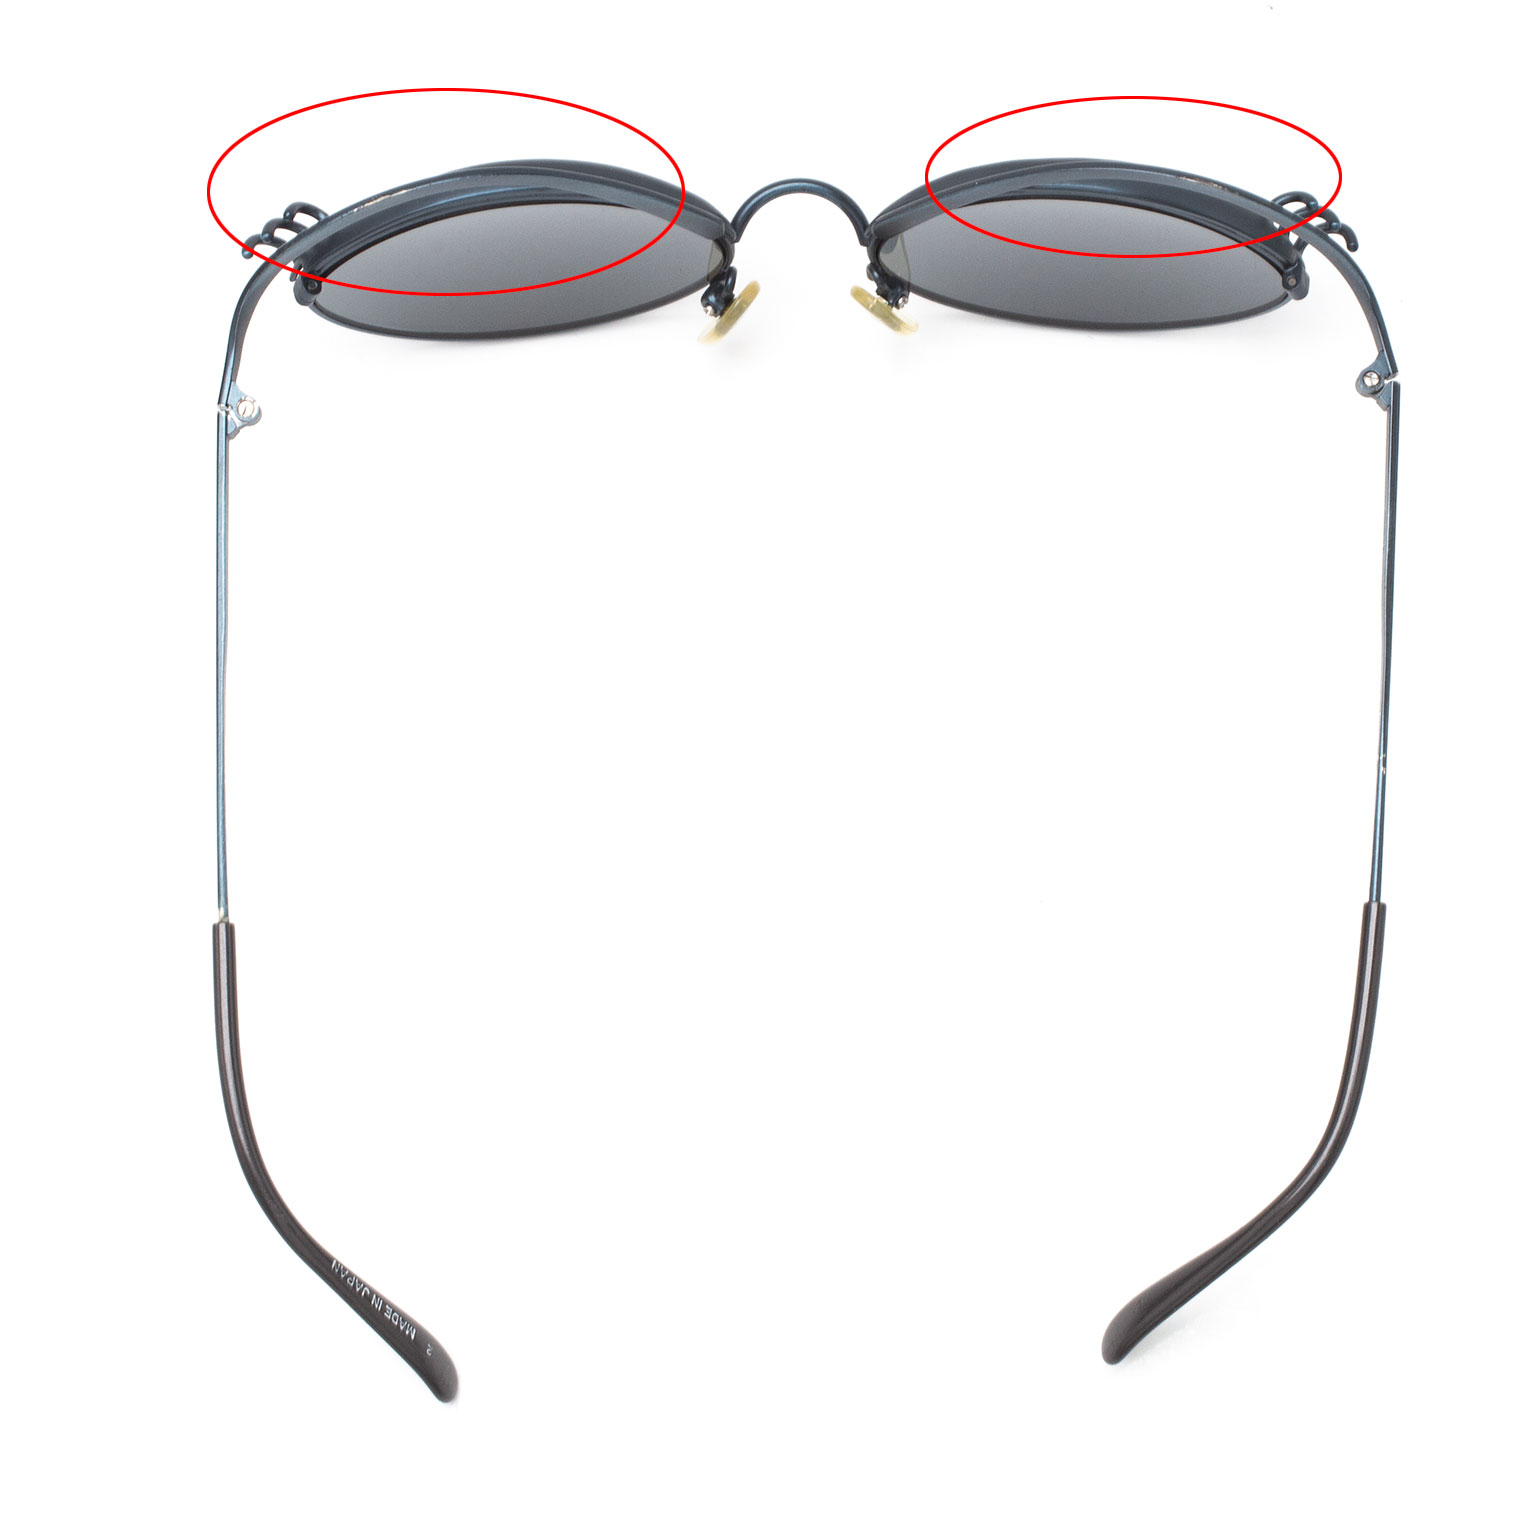 サングラス、avant -garde classique sunglasses.